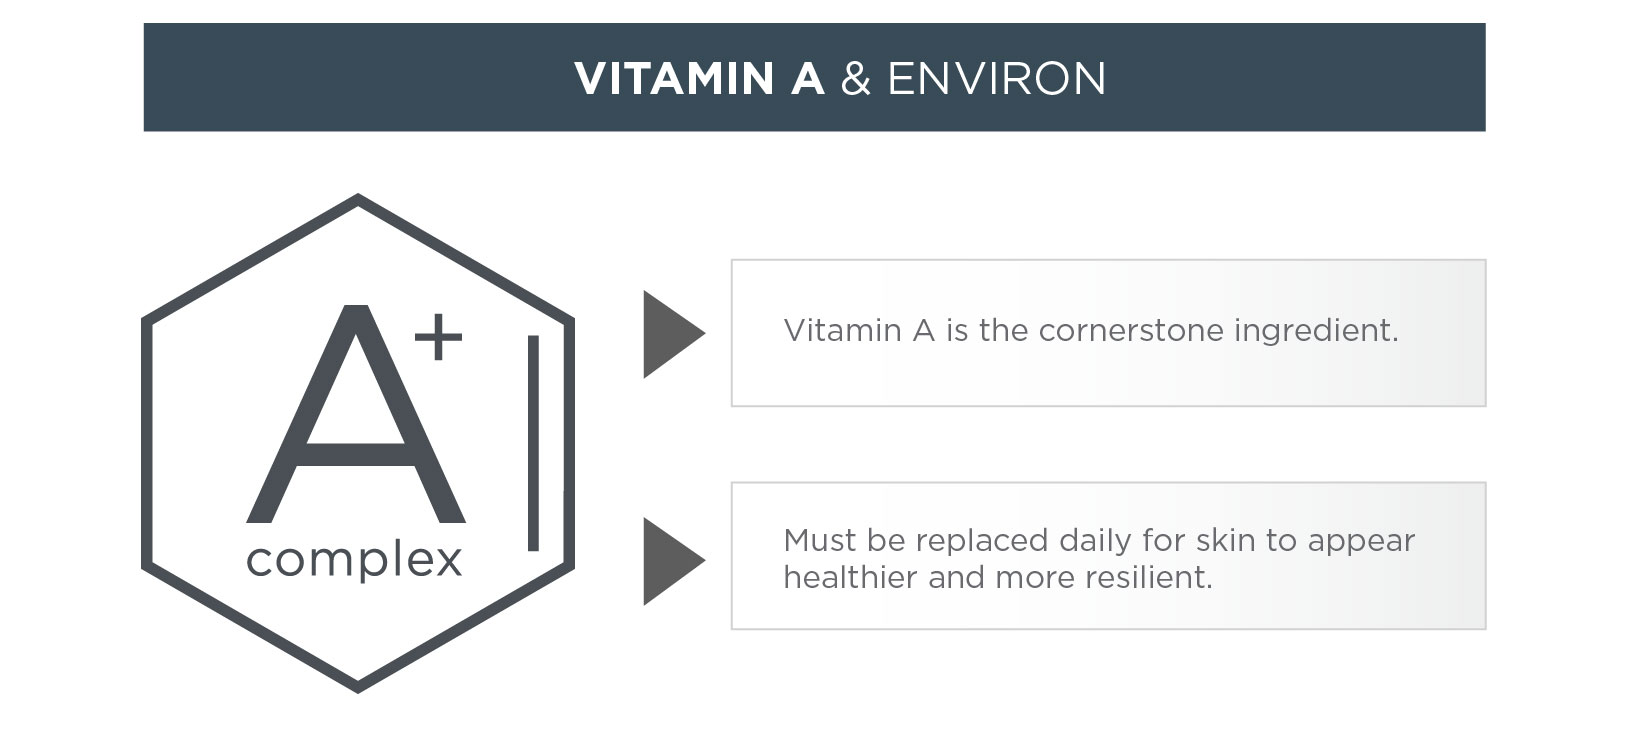 Vitamin A and Environ